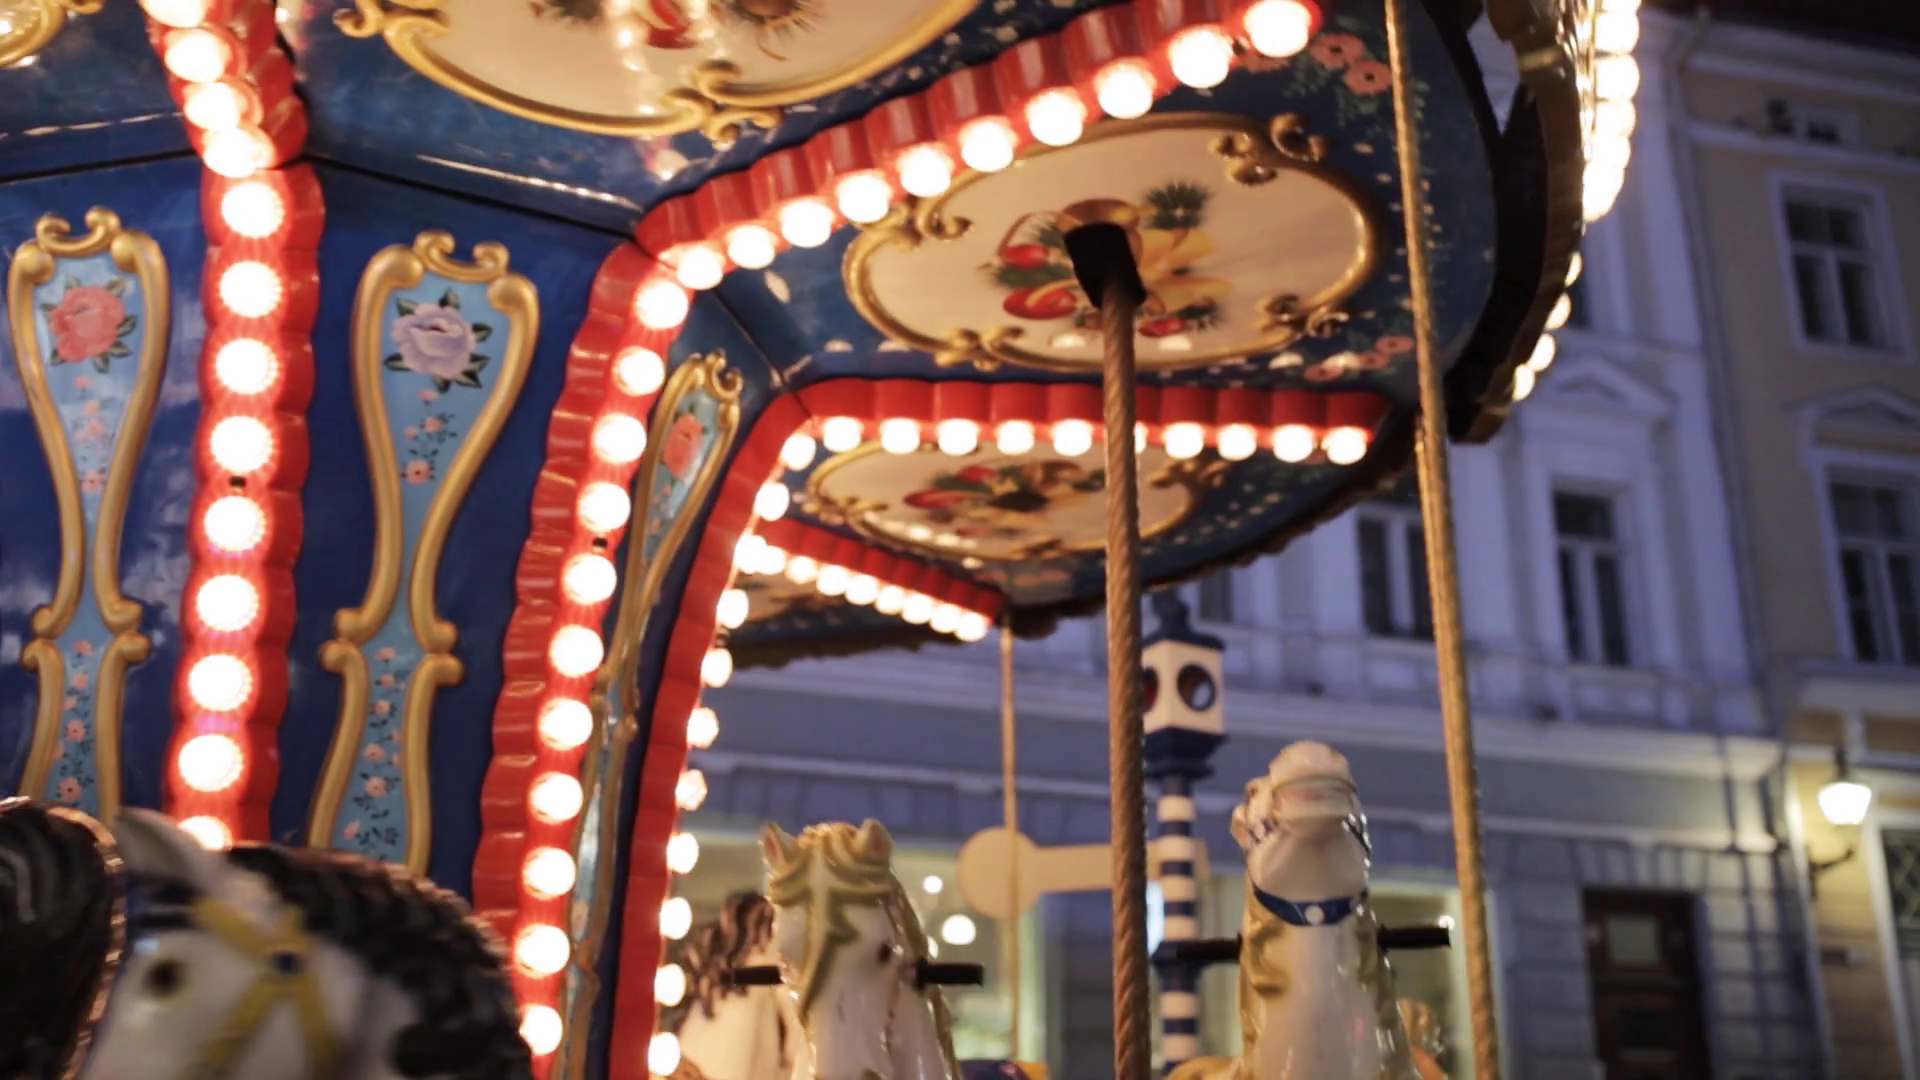 Illuminated carousel photo